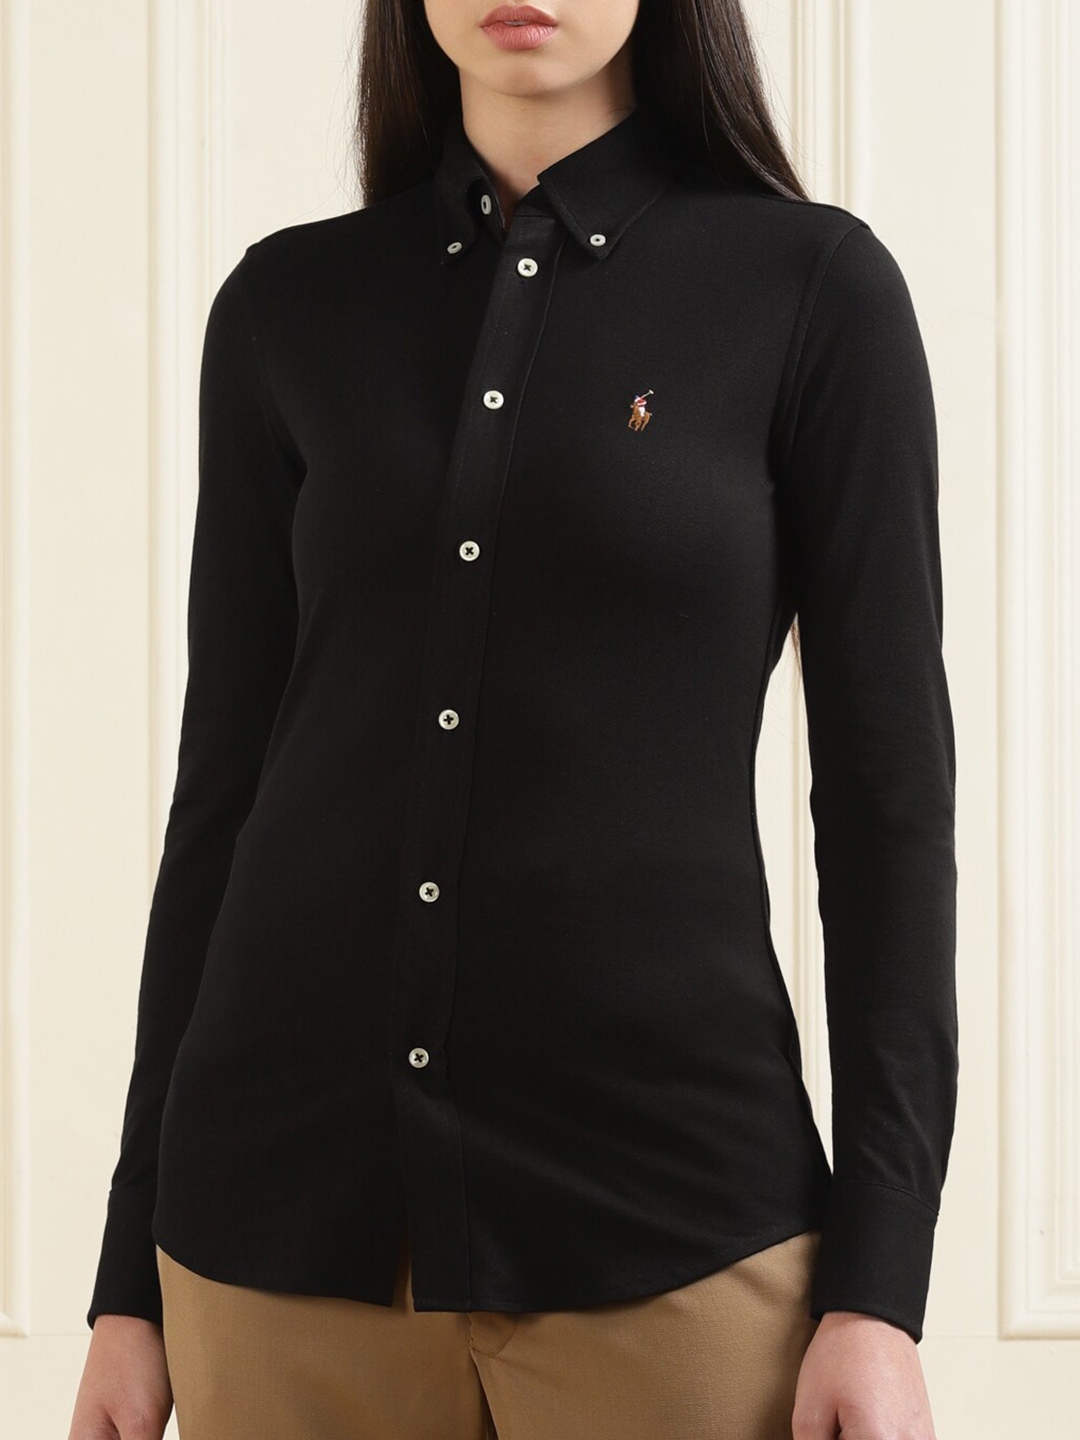 Buy Polo Ralph Lauren Women Black Cotton Casual Shirt Shirts For Women 17789844 Myntra 